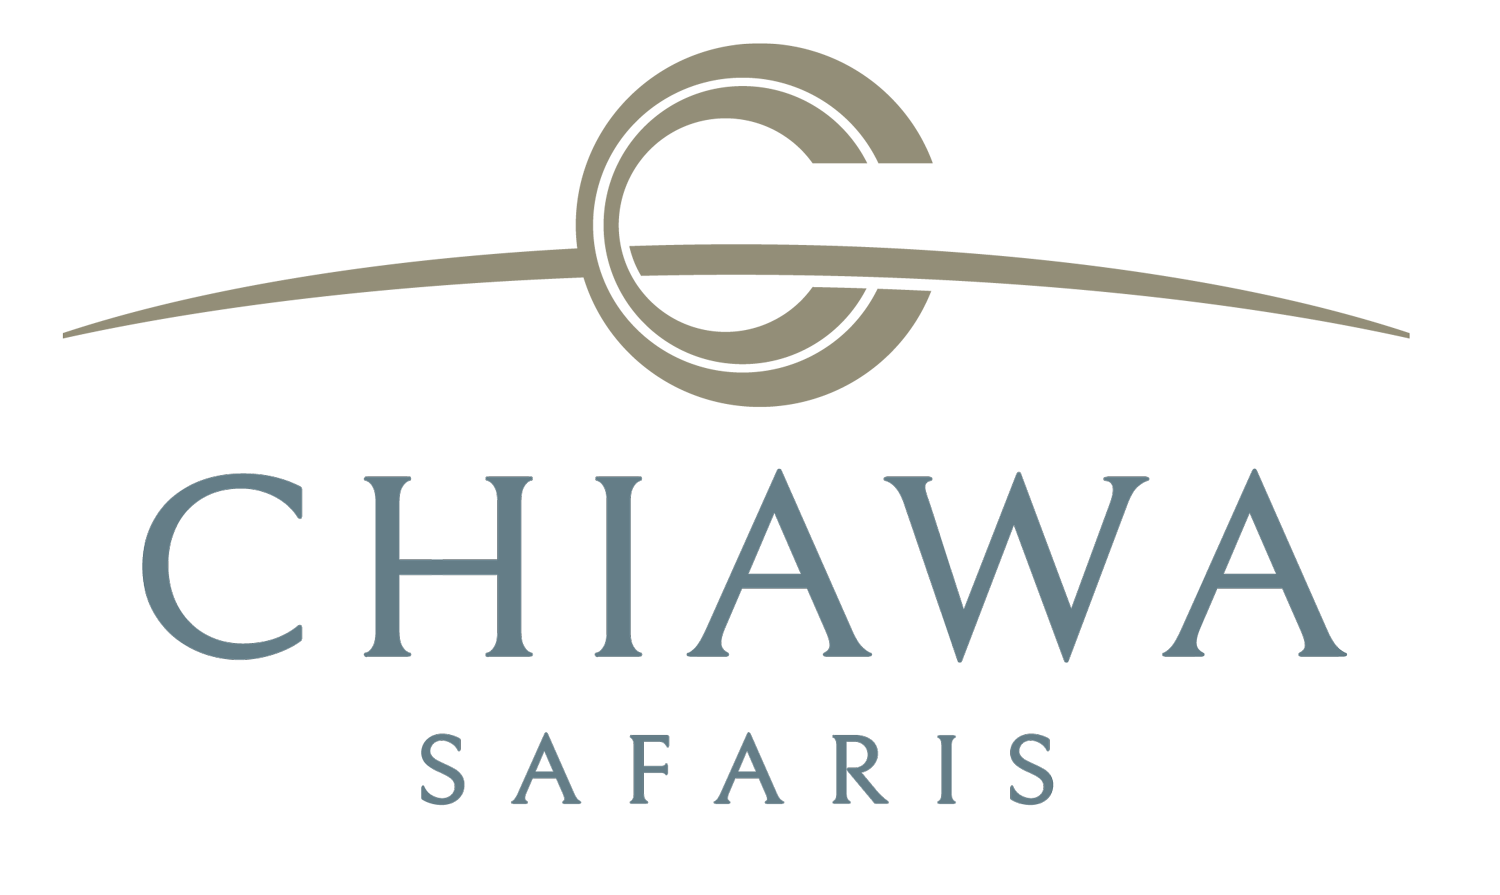 Chiawa Safaris